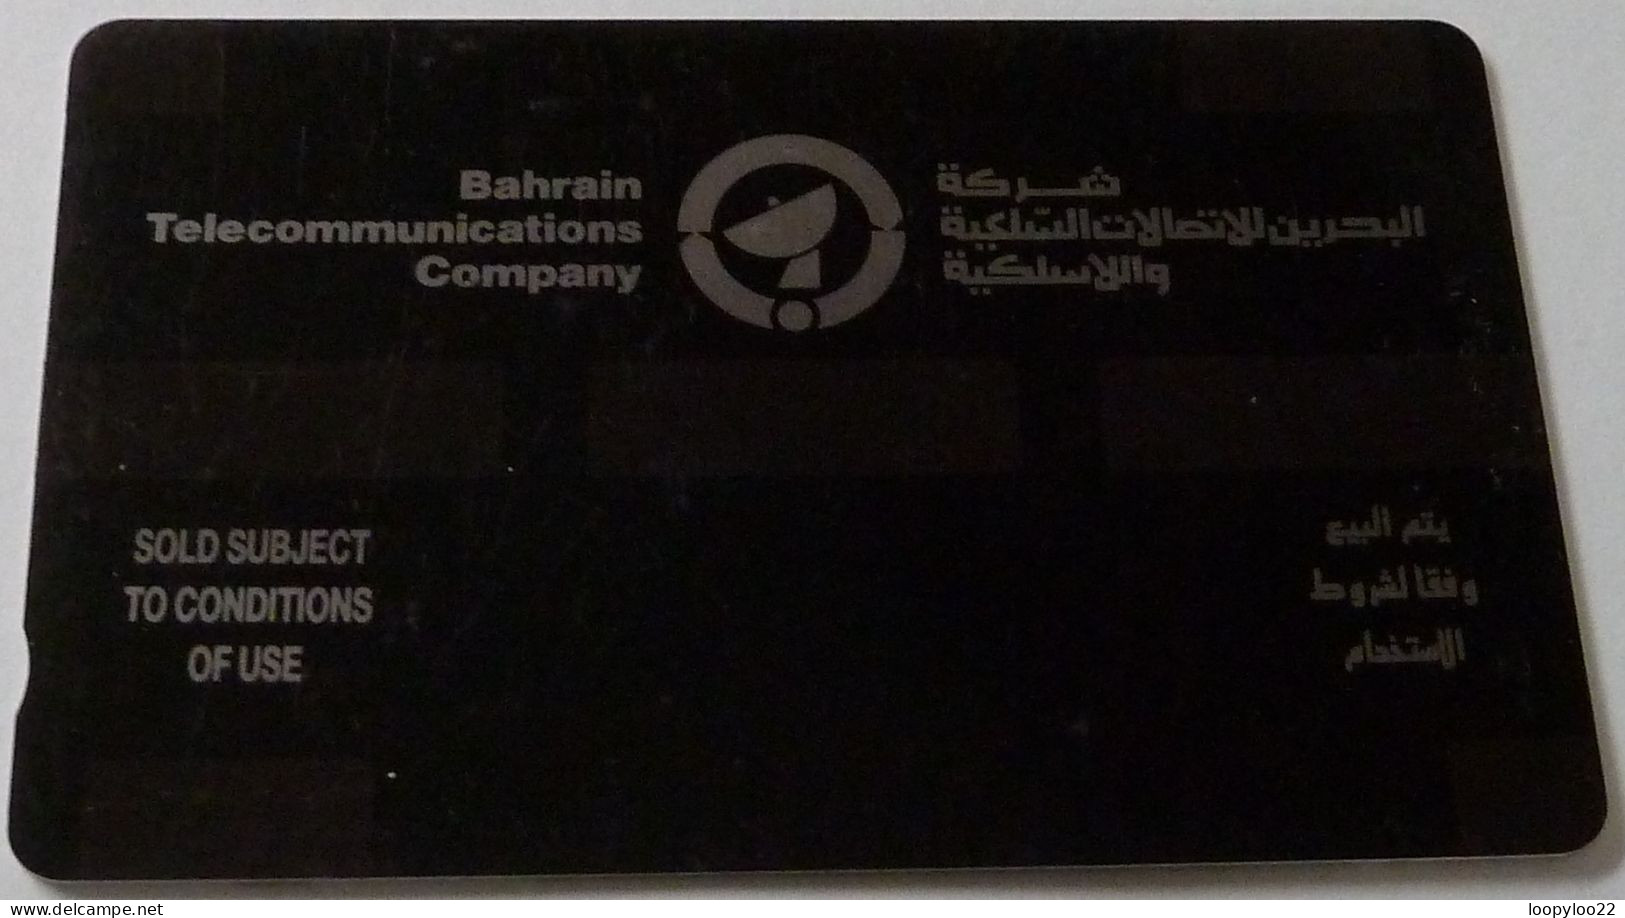 BAHRAIN - GPT - TEST CONTROL - CER1003 - Weaver - 50 Units - RRR - Baharain